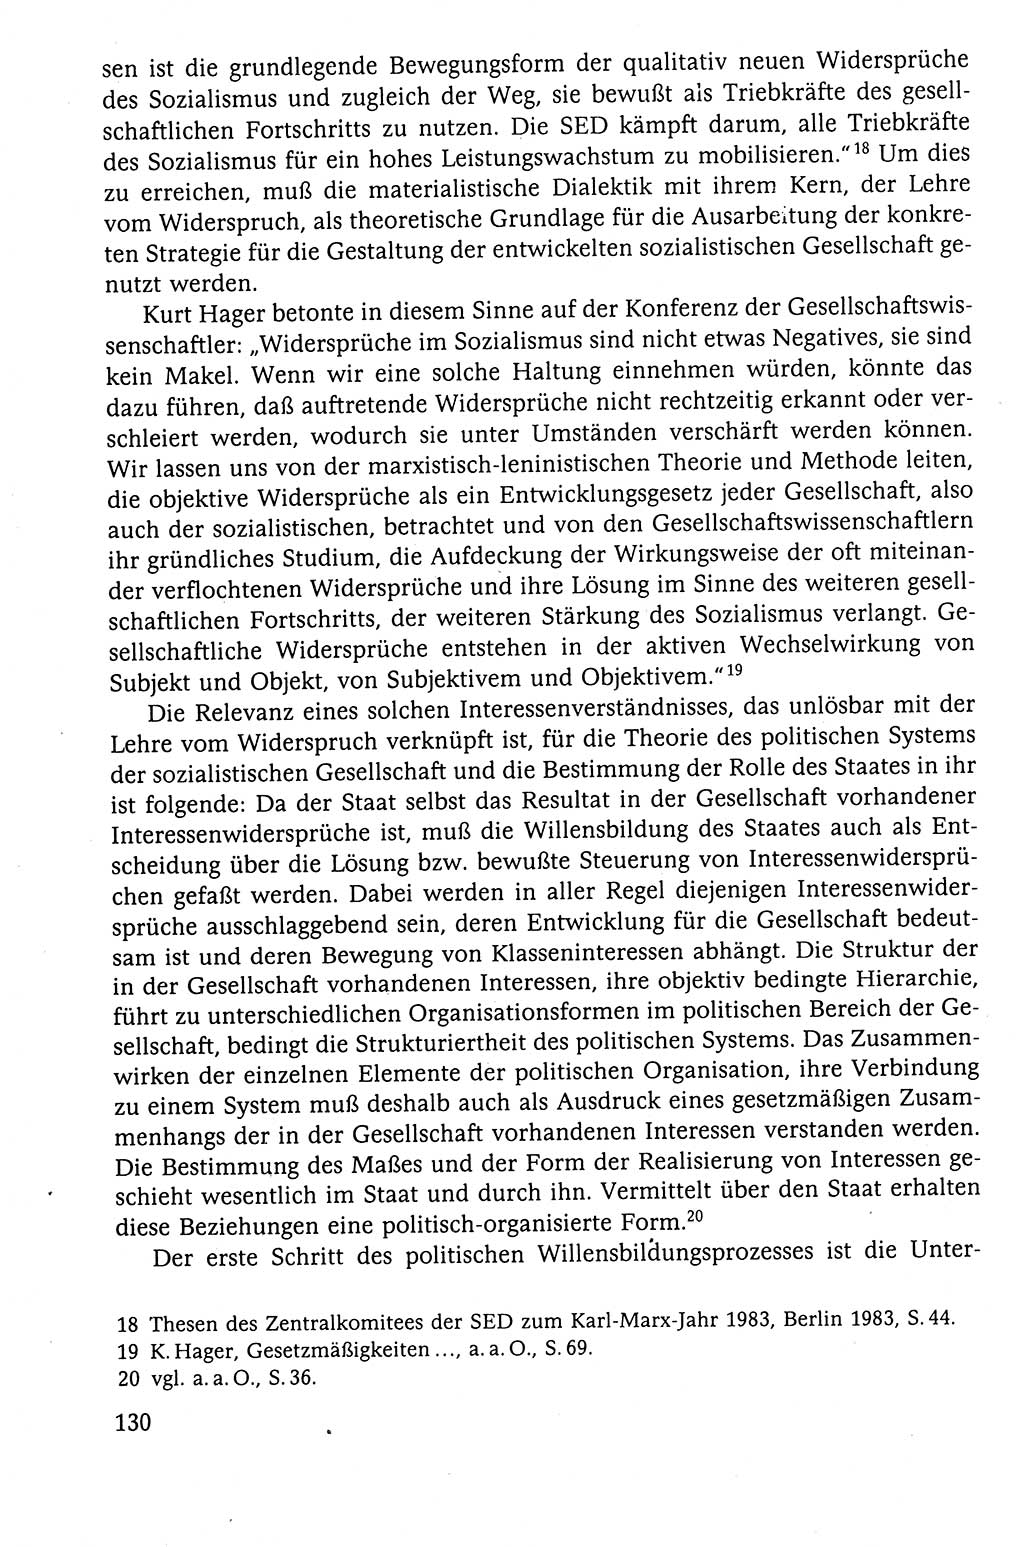 Der Staat im politischen System der DDR (Deutsche Demokratische Republik) 1986, Seite 130 (St. pol. Sys. DDR 1986, S. 130)